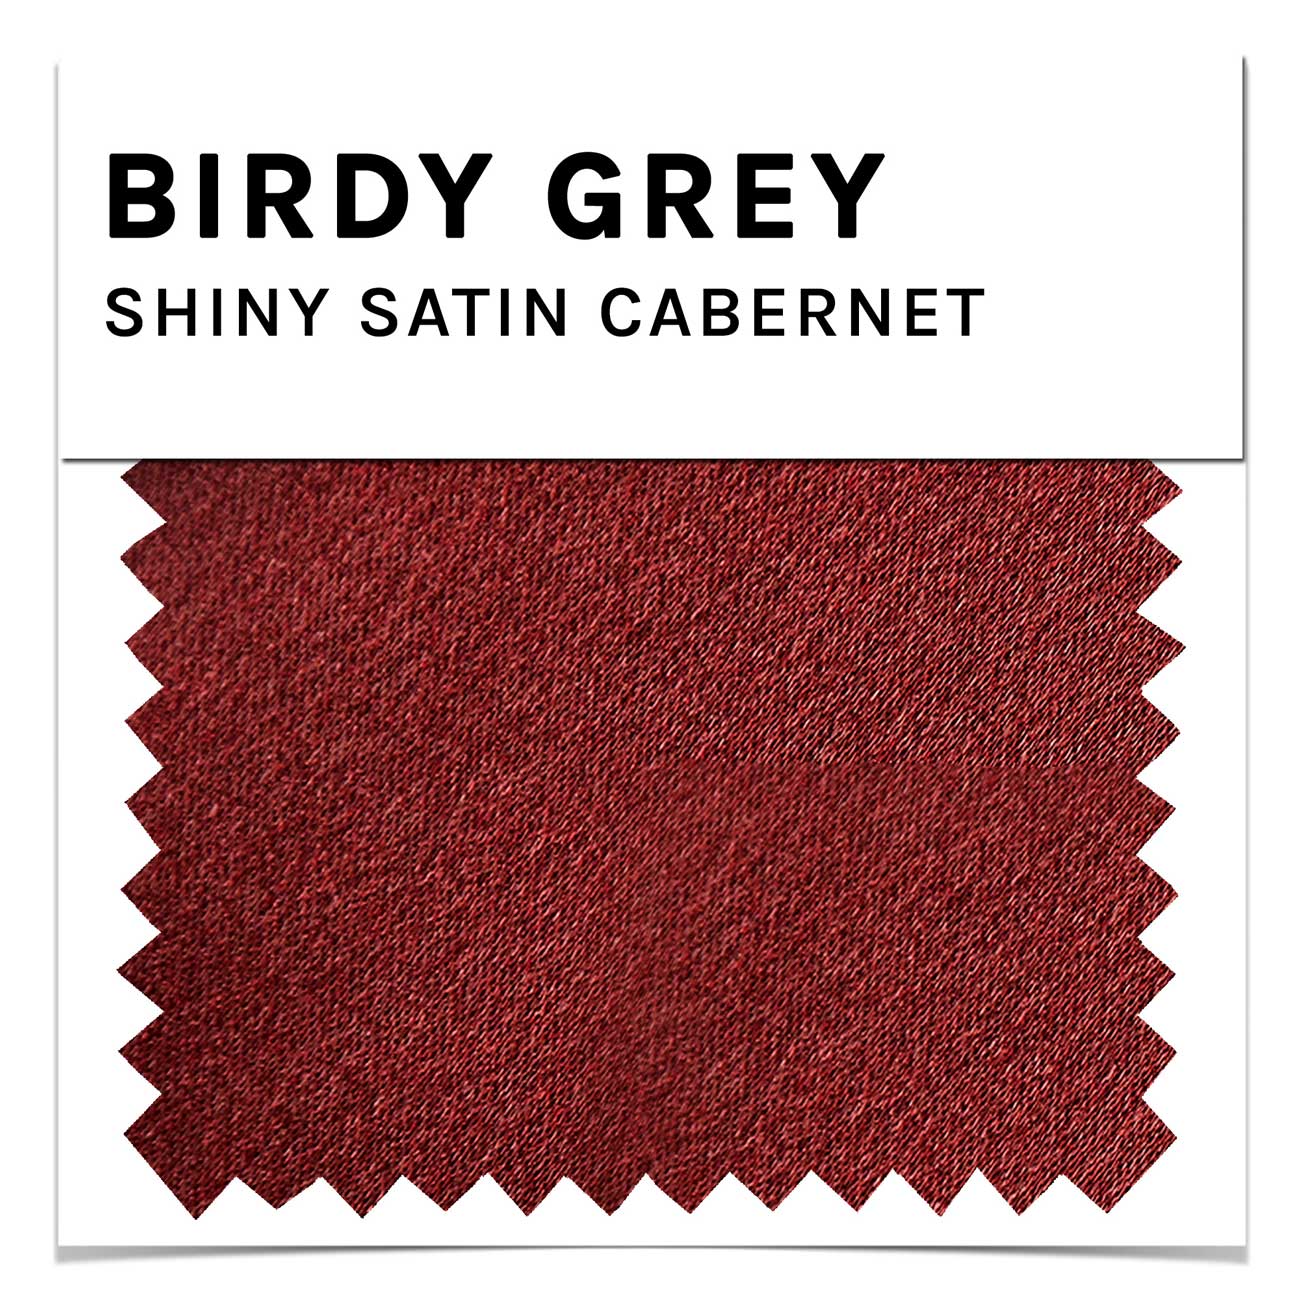 Swatch - Shiny Satin in Cabernet by Birdy Grey